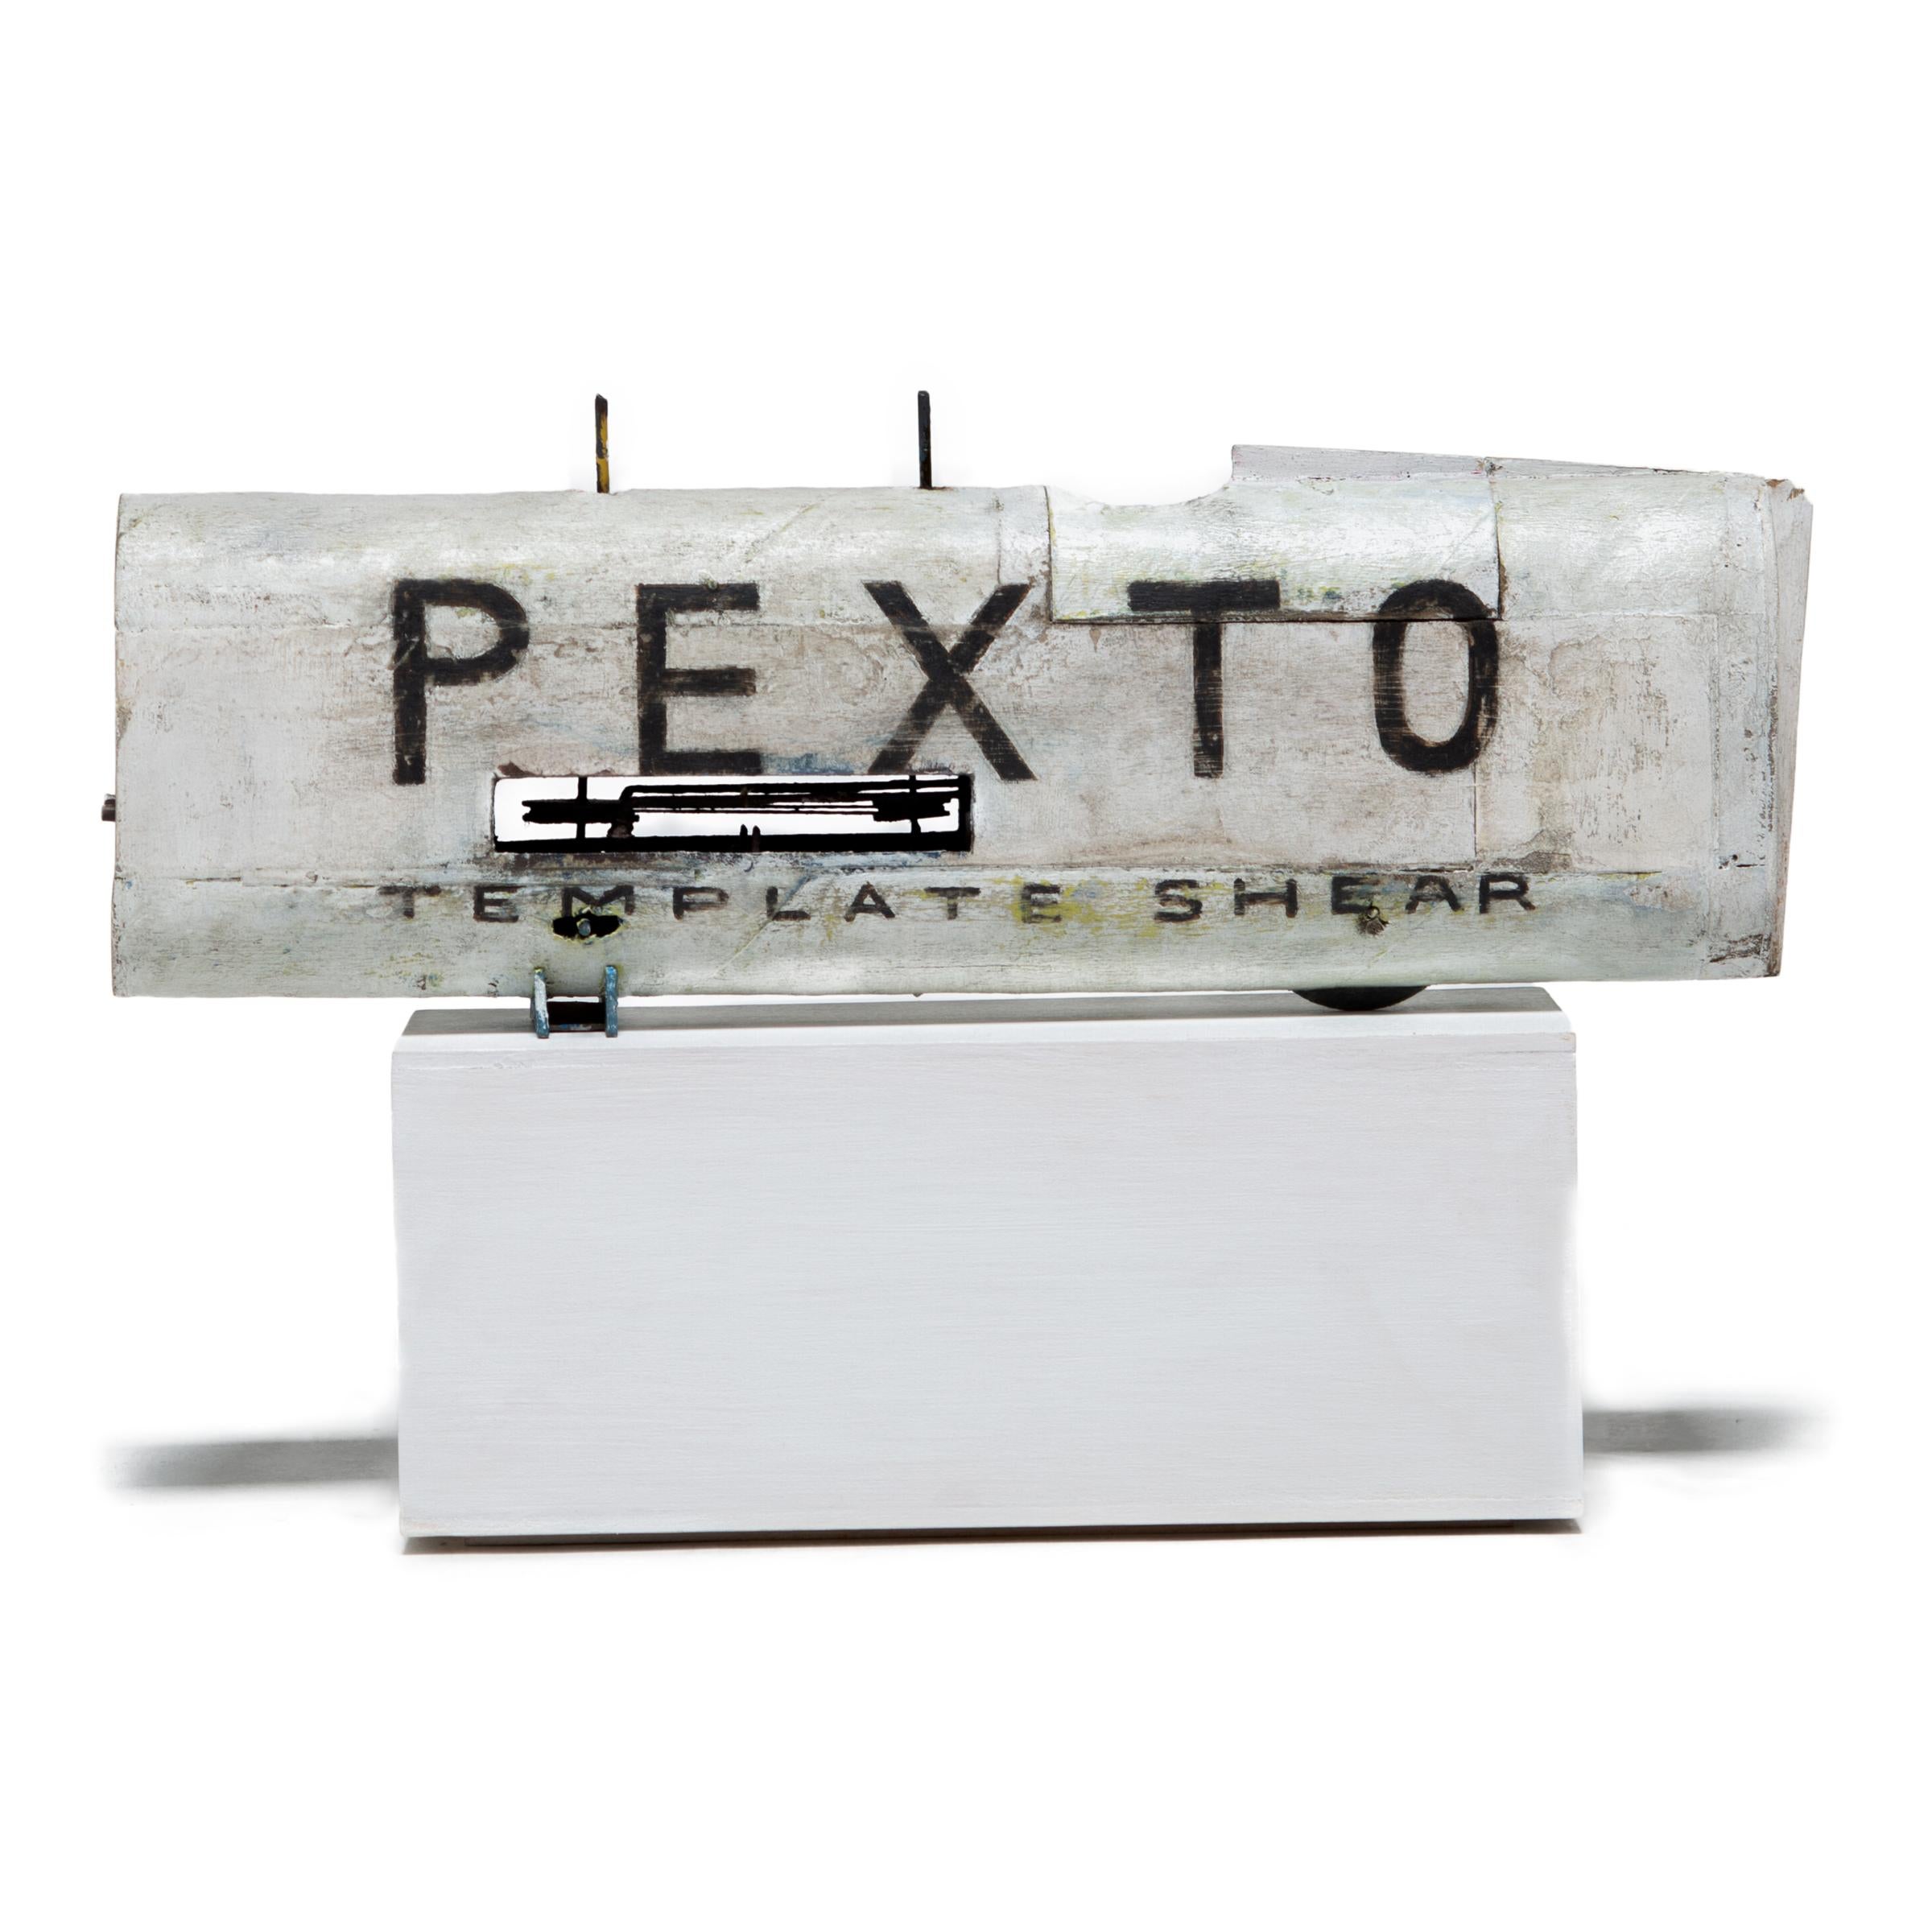 „Pexto Car“, Skulptur in Mischtechnik, 2019 – Sculpture von Patrick Fitzgerald